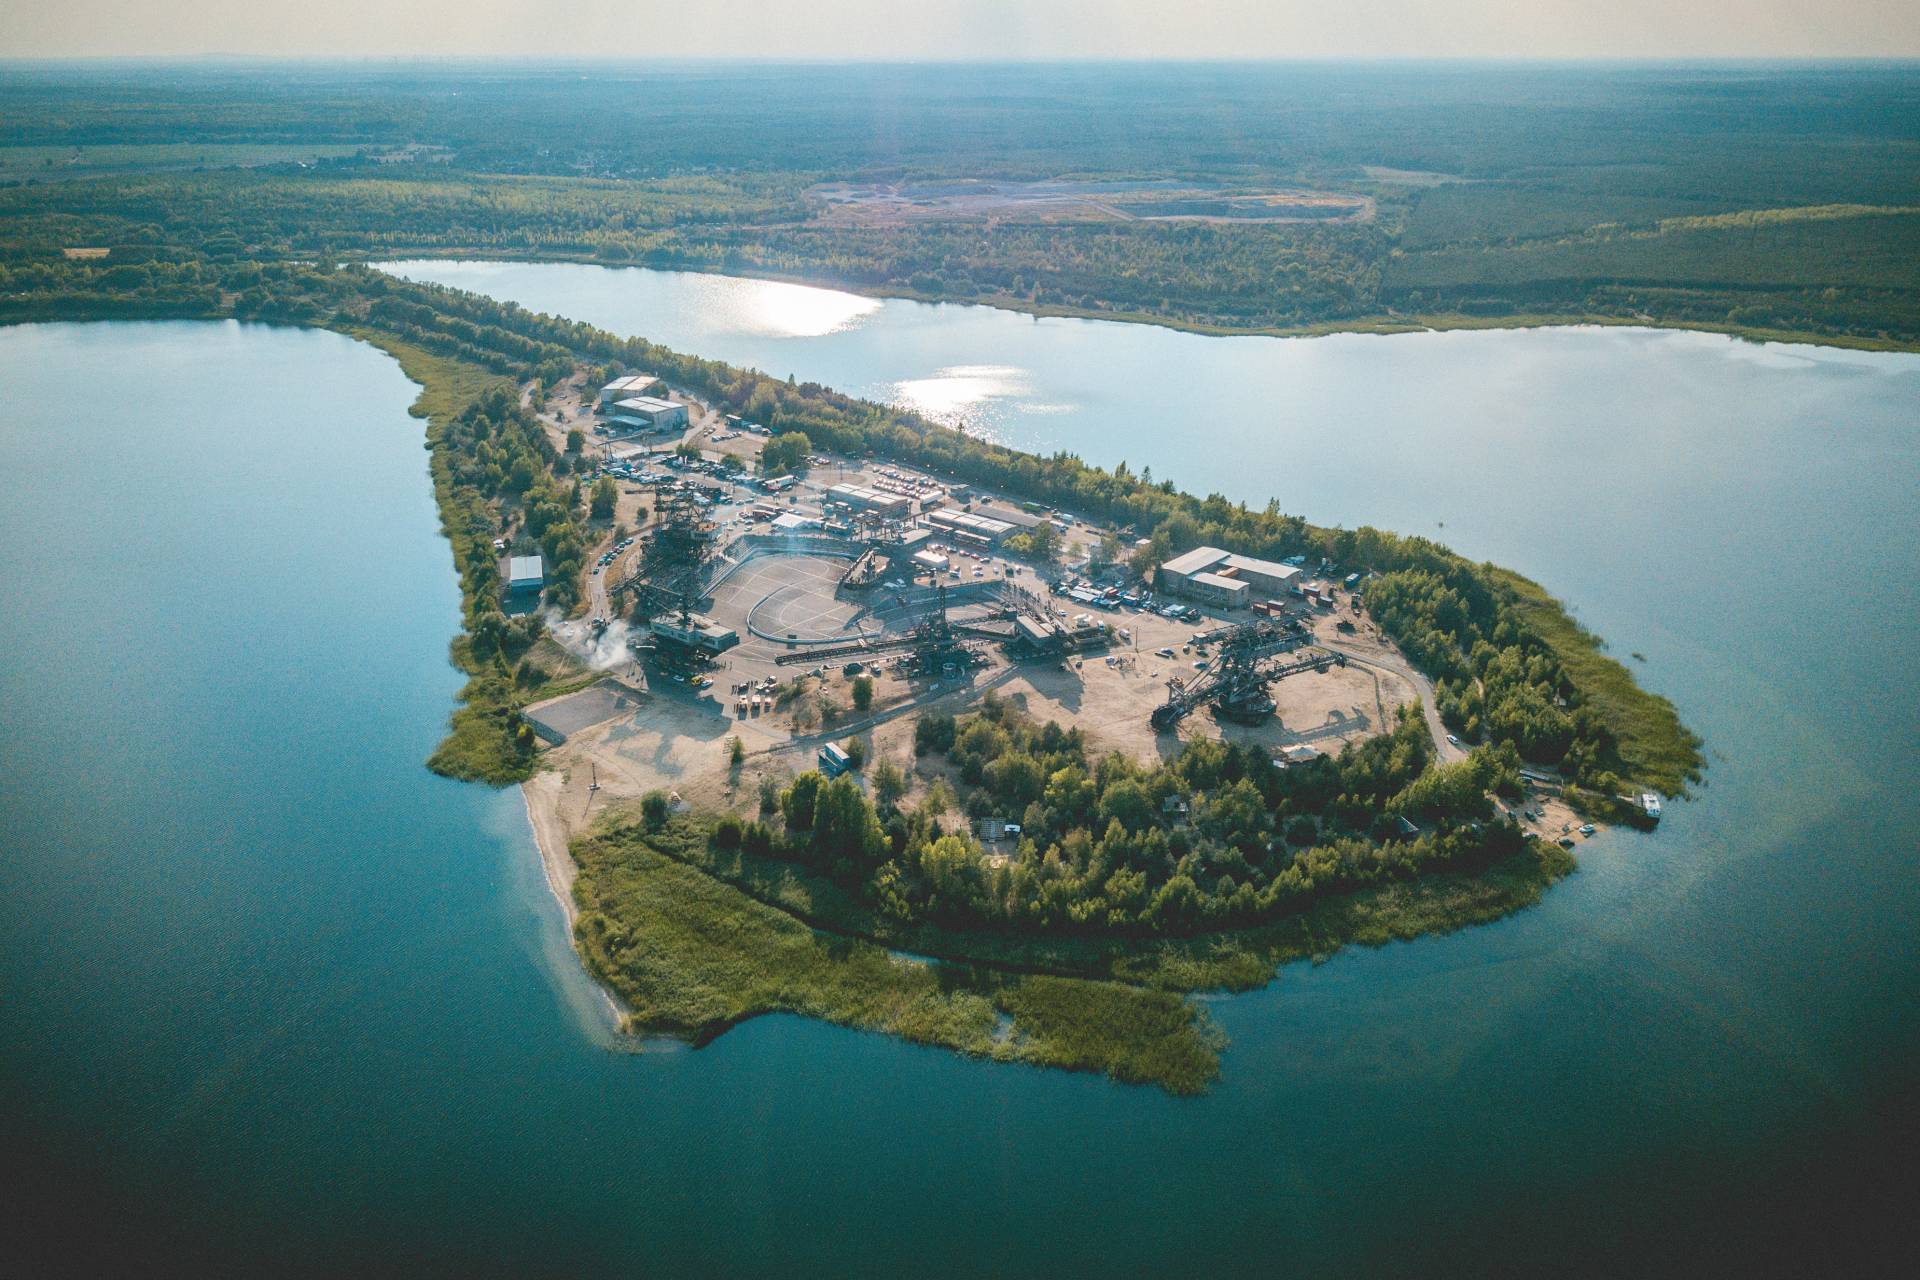 Luftausnahme von Ferropolis auf einer Halbinsel im Gremminer See